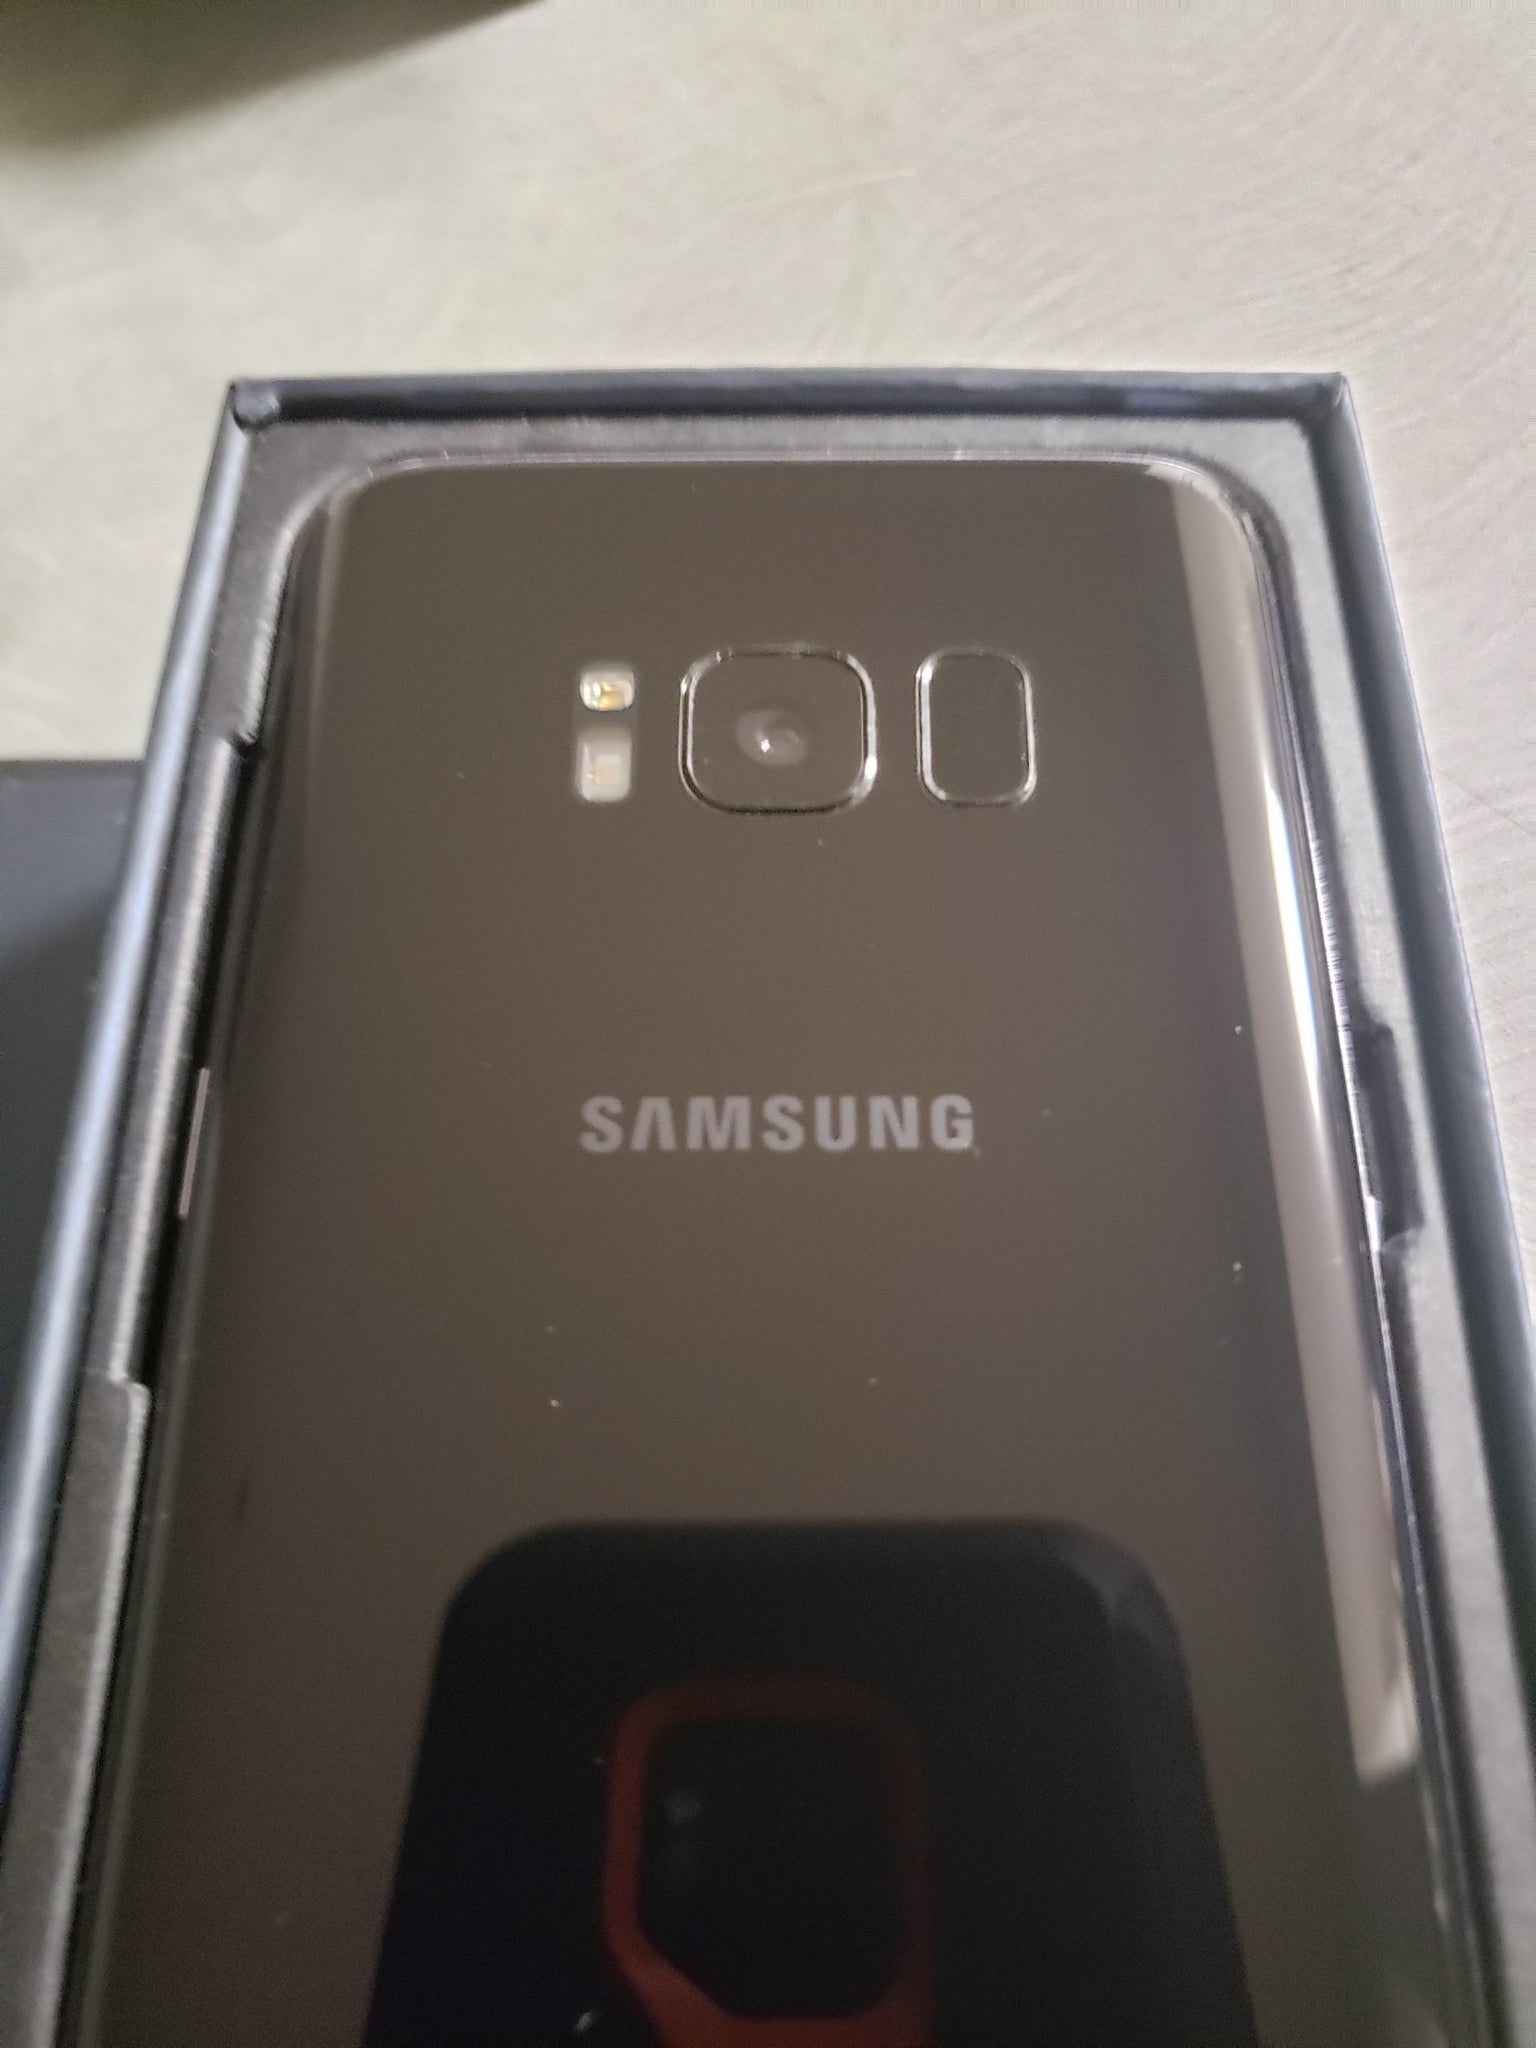 Samsung Galaxy S8 64GB Black 